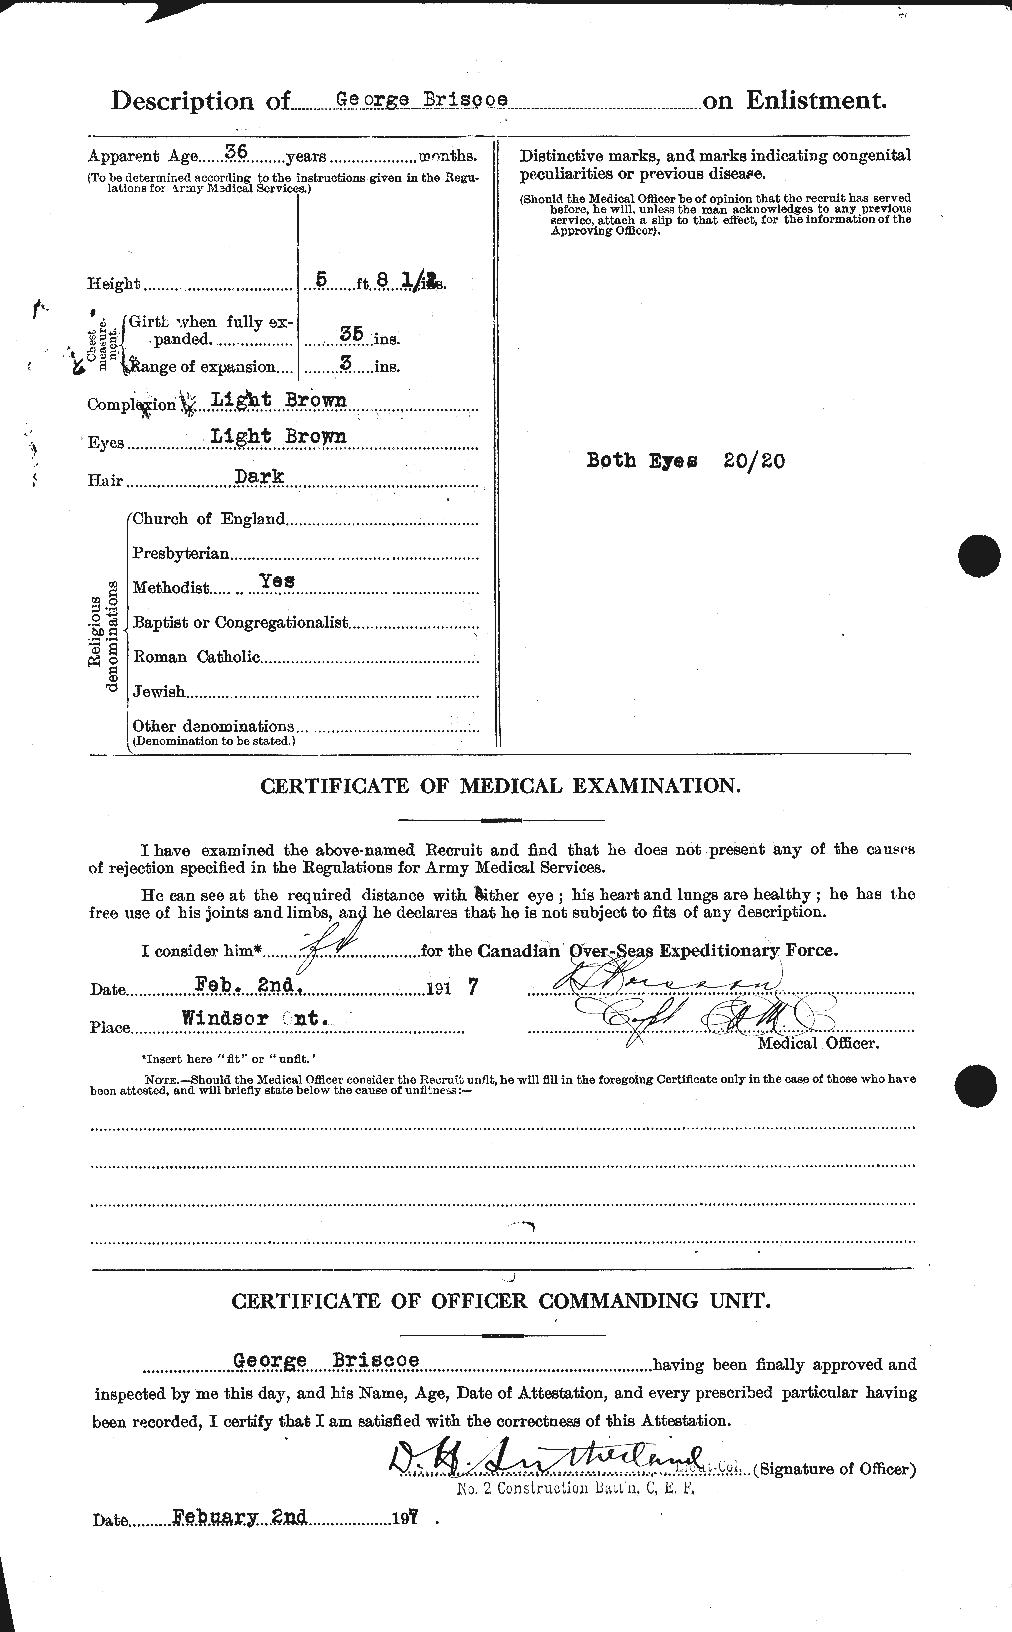 Dossiers du Personnel de la Première Guerre mondiale - CEC 259472b